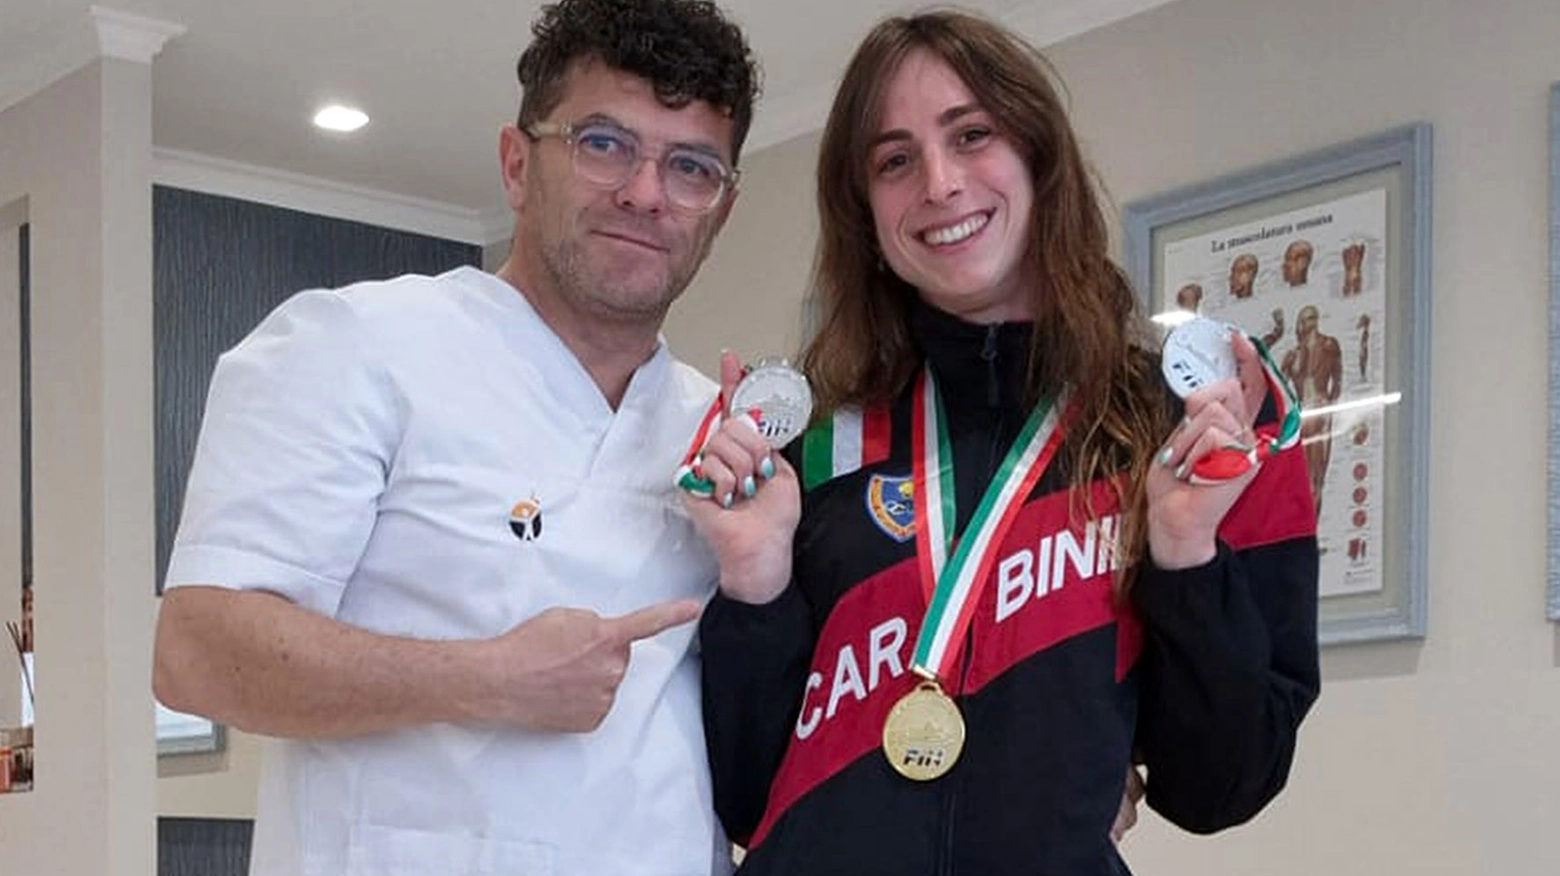 La nuotatrice ha superato un infortunio alla spalla insieme al fisioterapista bibbienese Emanuele Cherubini